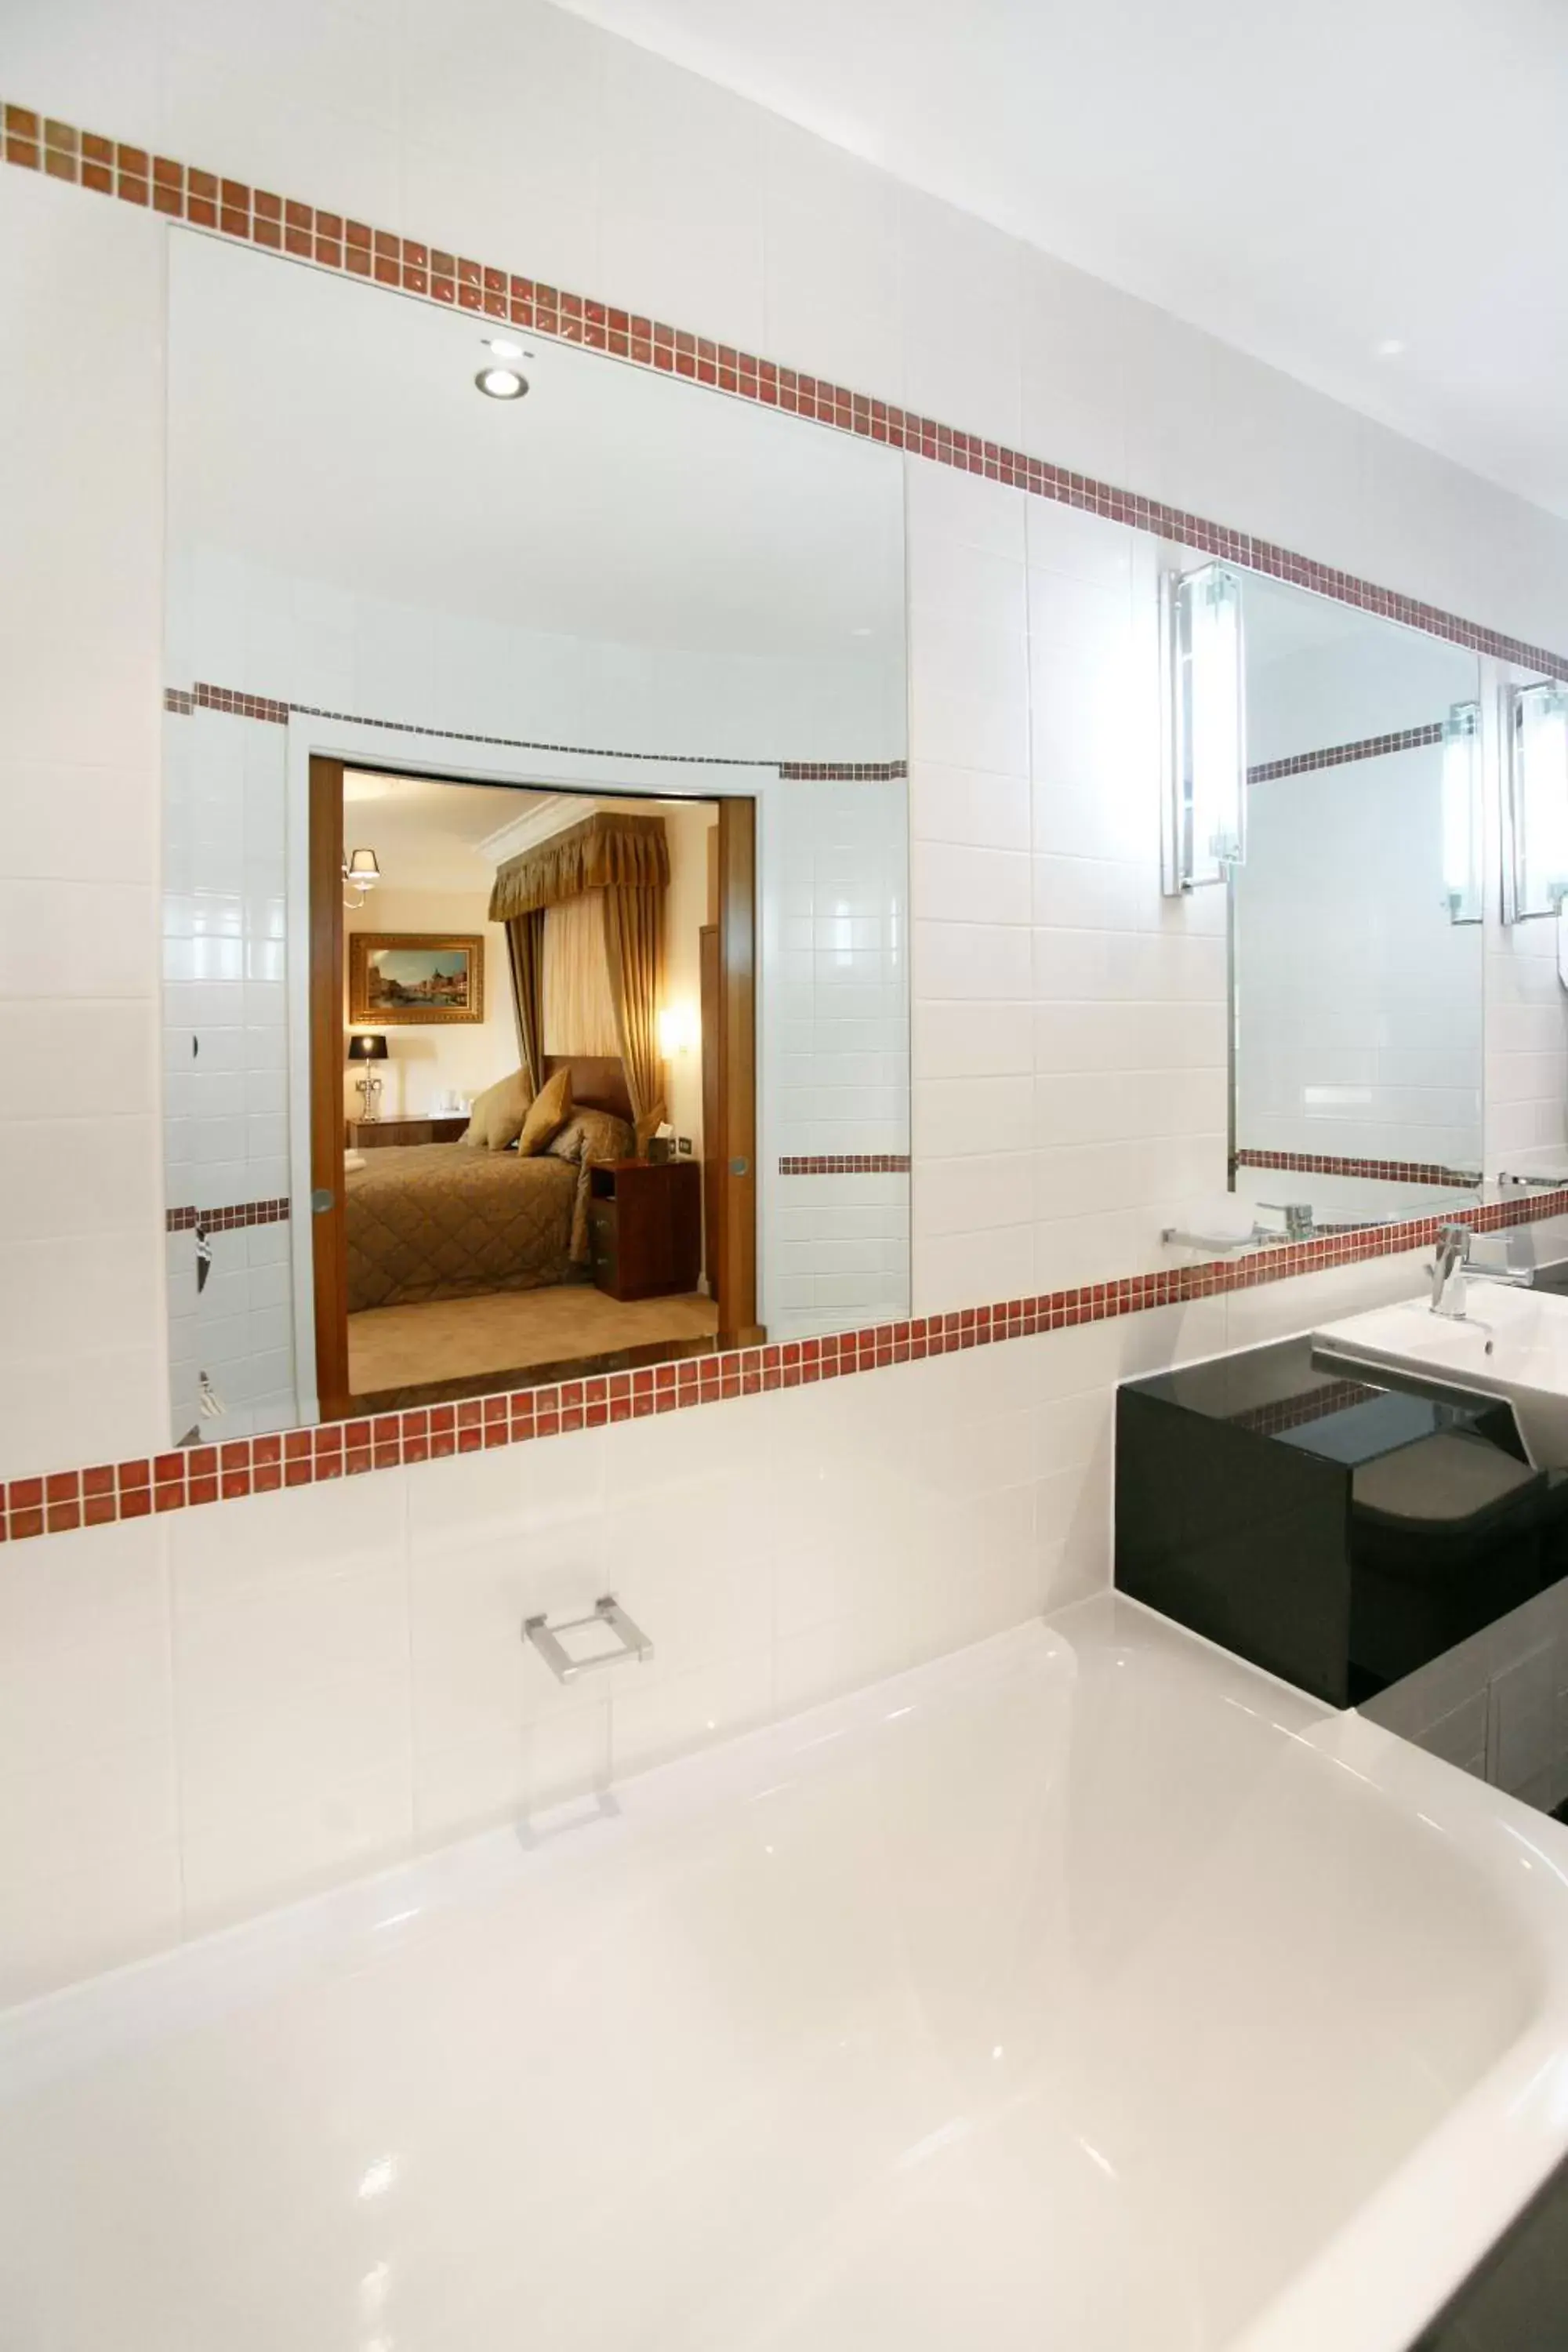 Bathroom in Legends Hotel